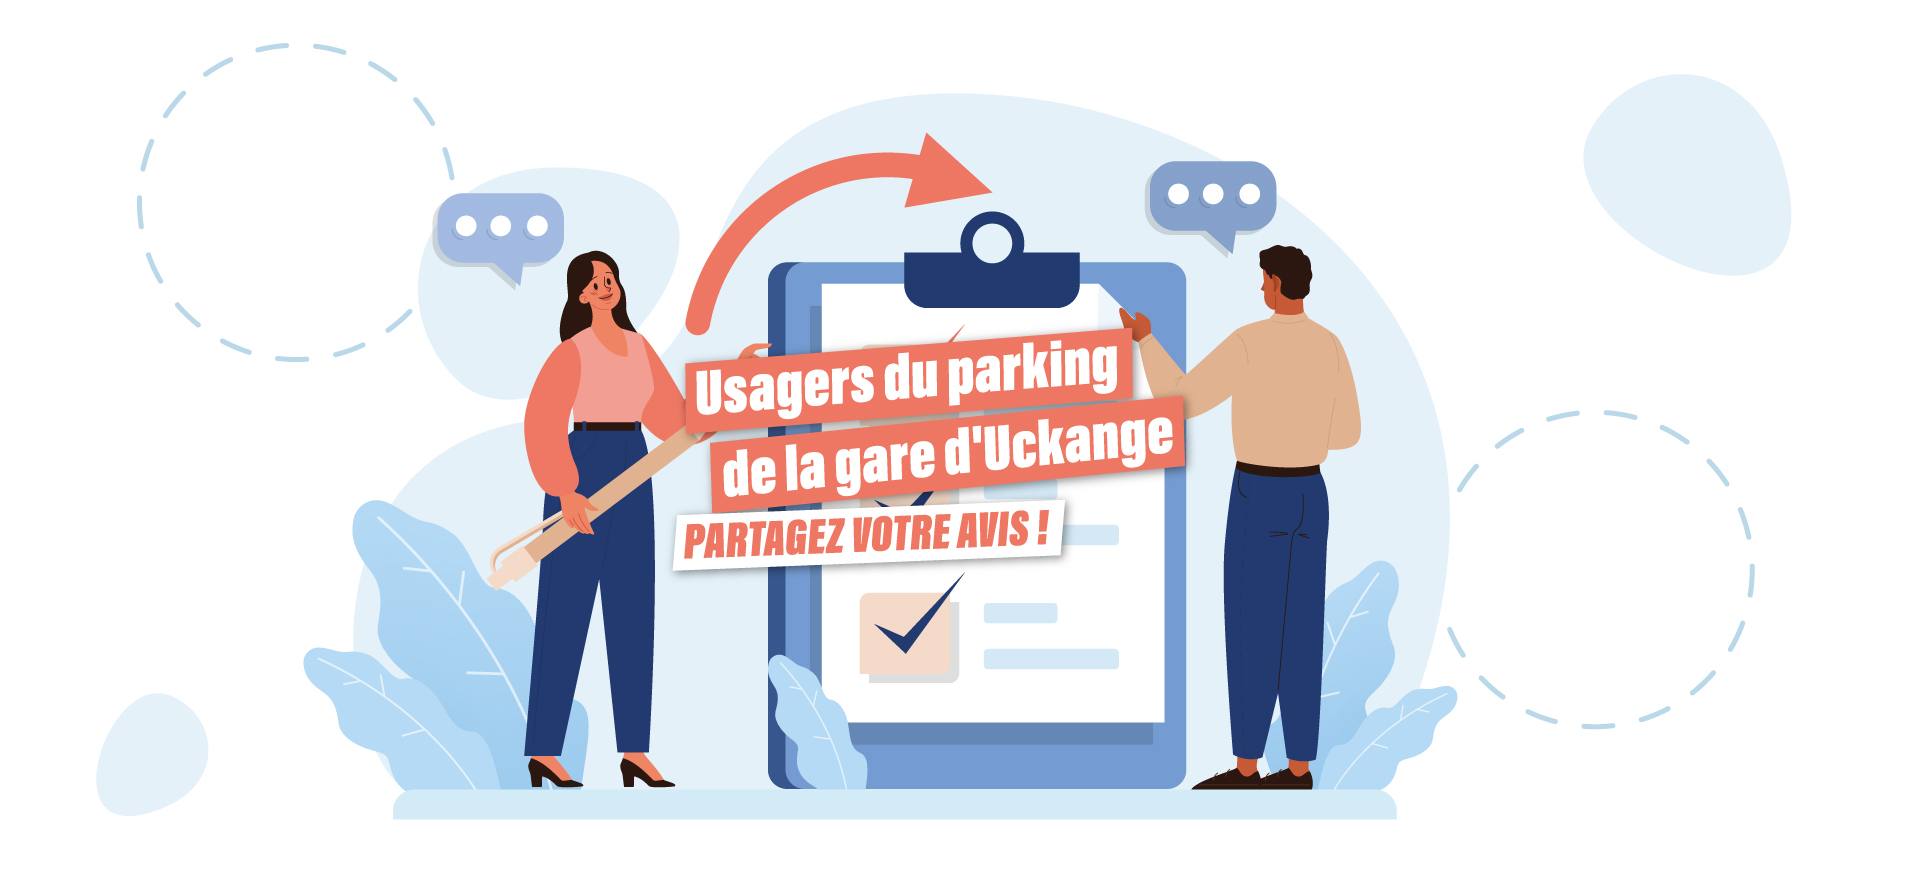 Usagers du parking de la gare de Uckange : votre avis compte !